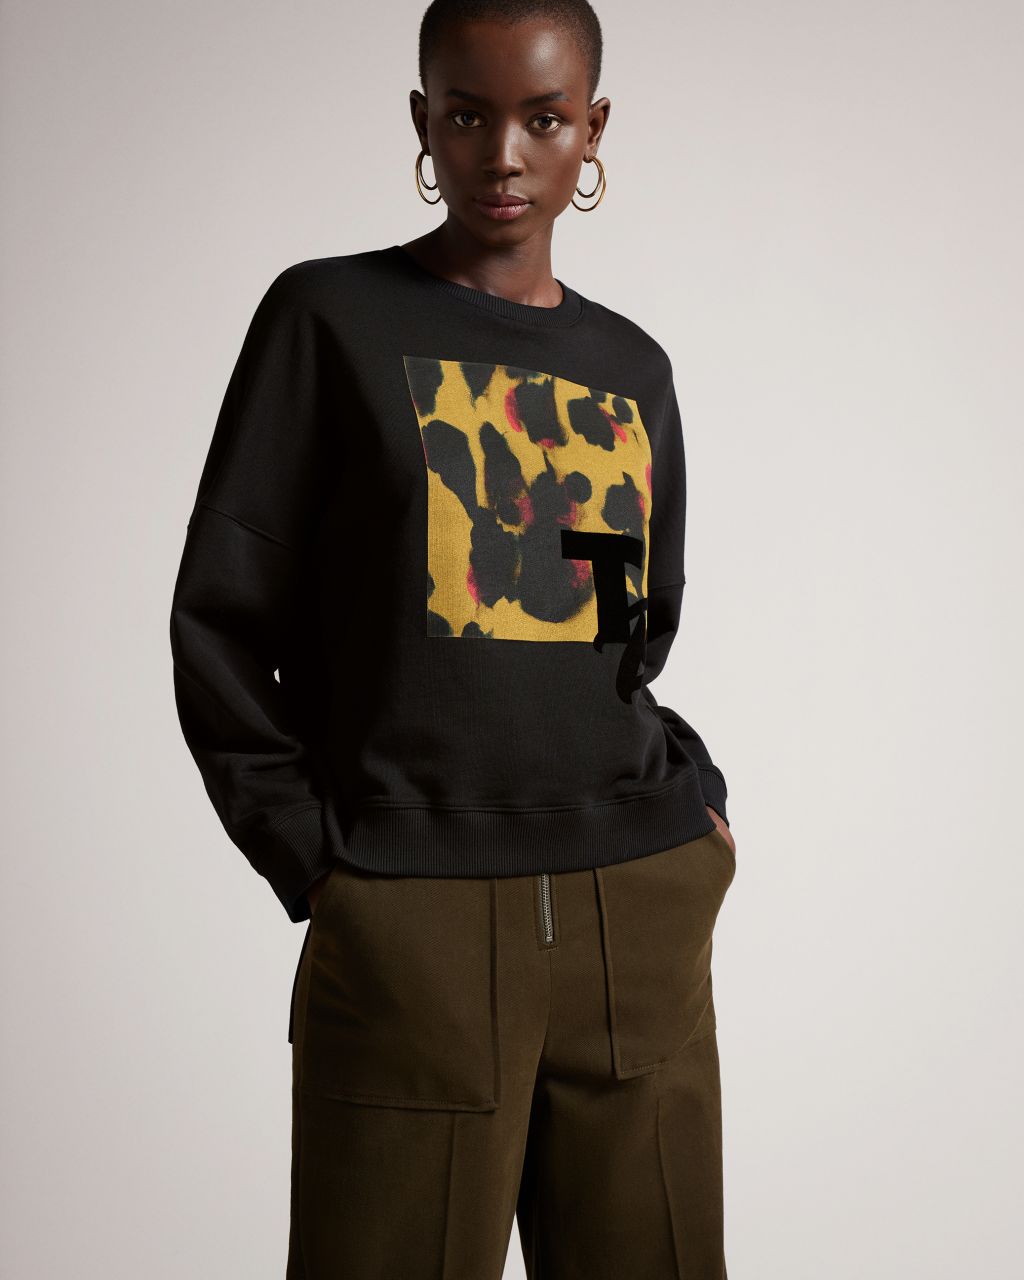 Femmes Sweat-Shirt Imprimé Tb Leopard En Noir, Leperd, Coton